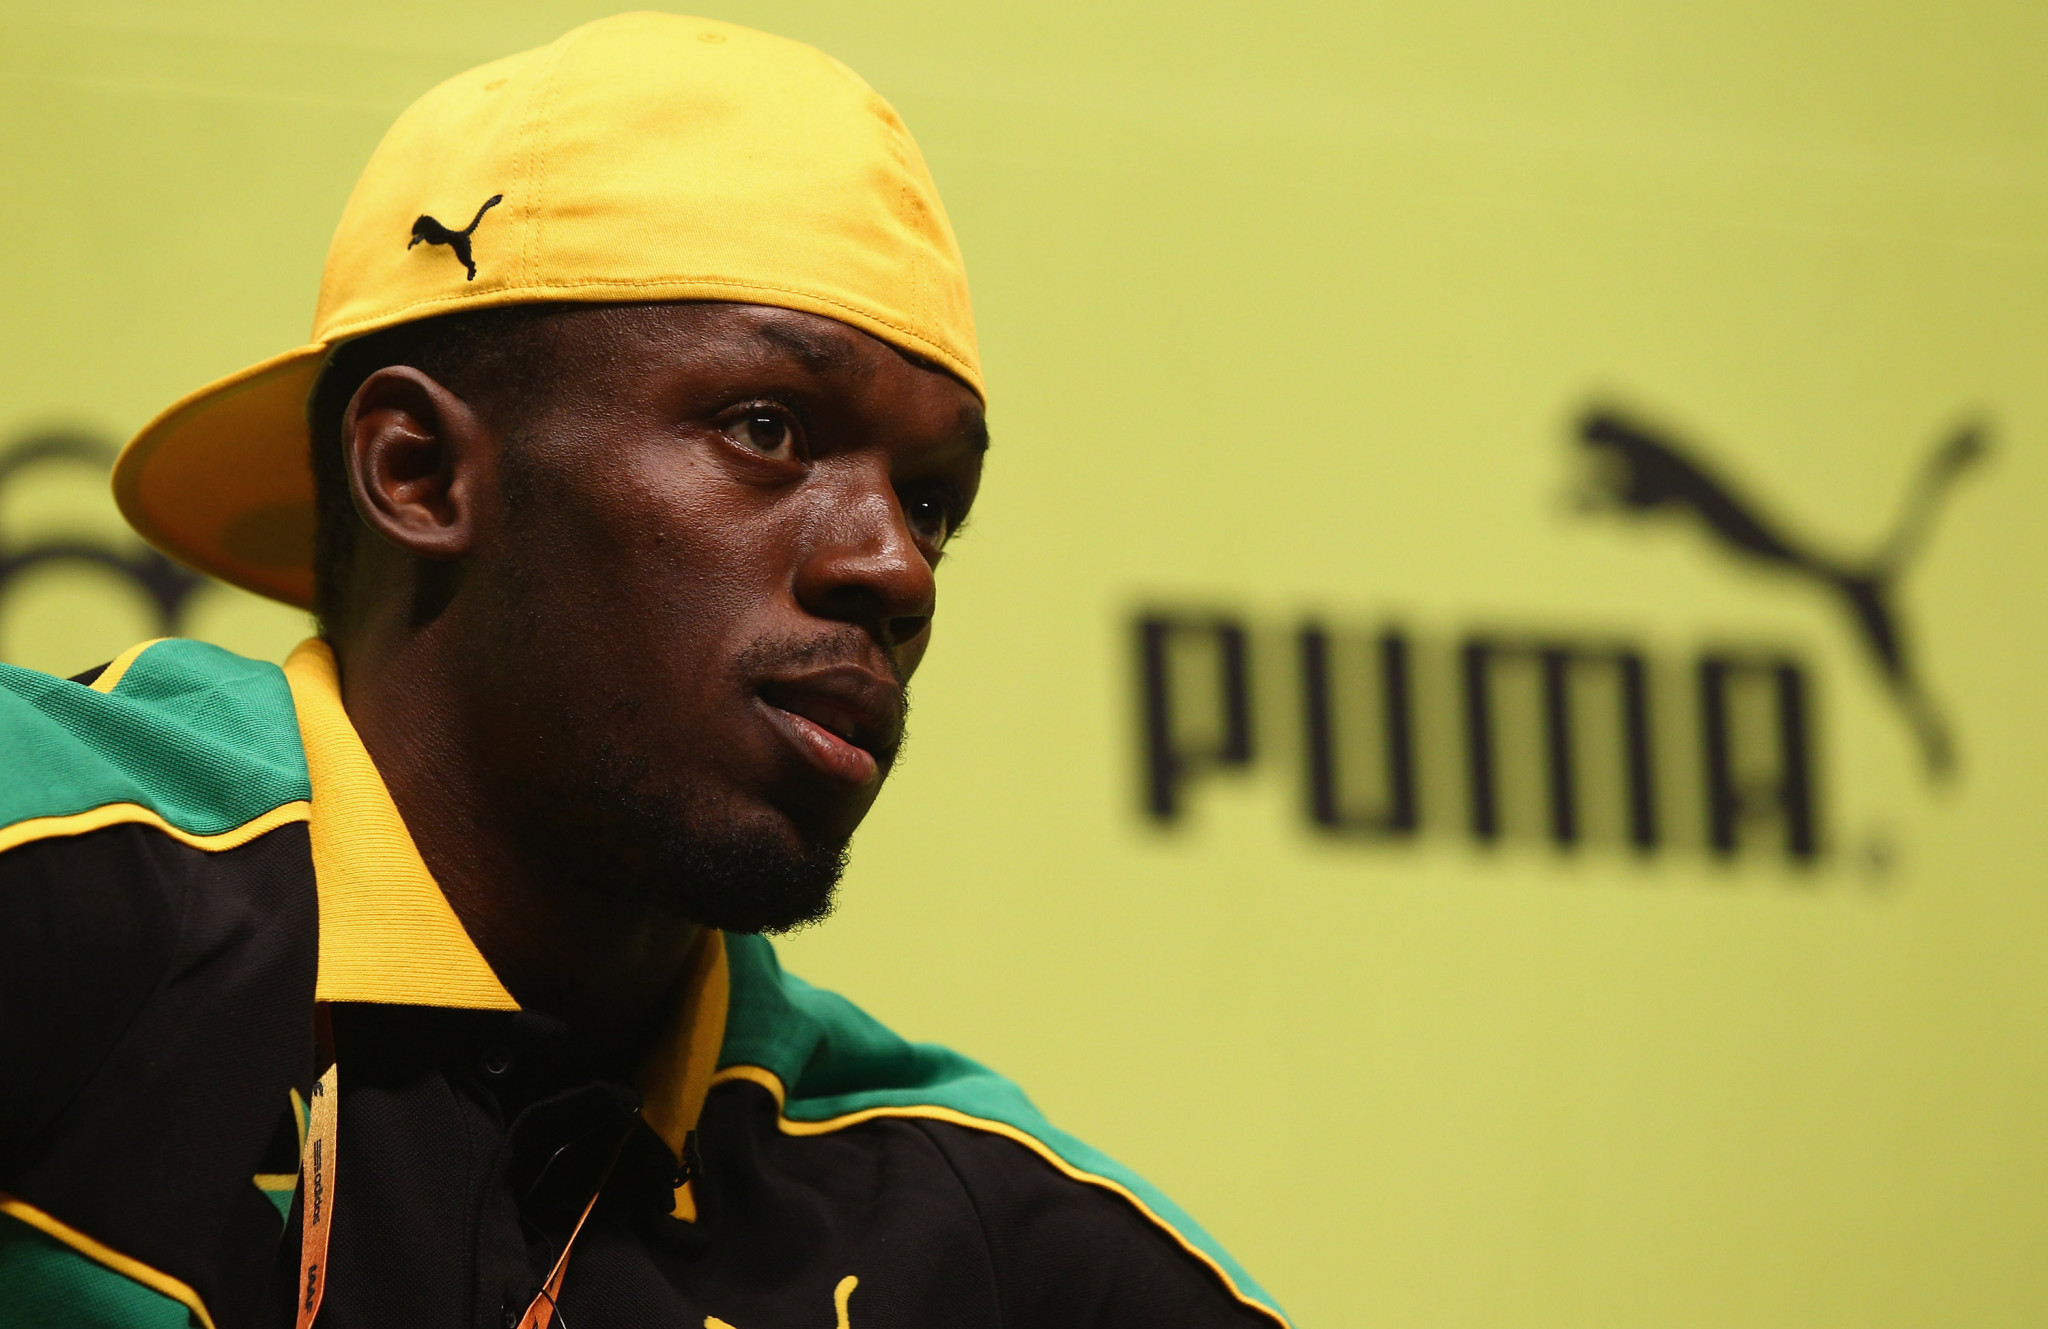 Puma has sponsored Jamaican sprint legend Usain Bolt ©Getty Images